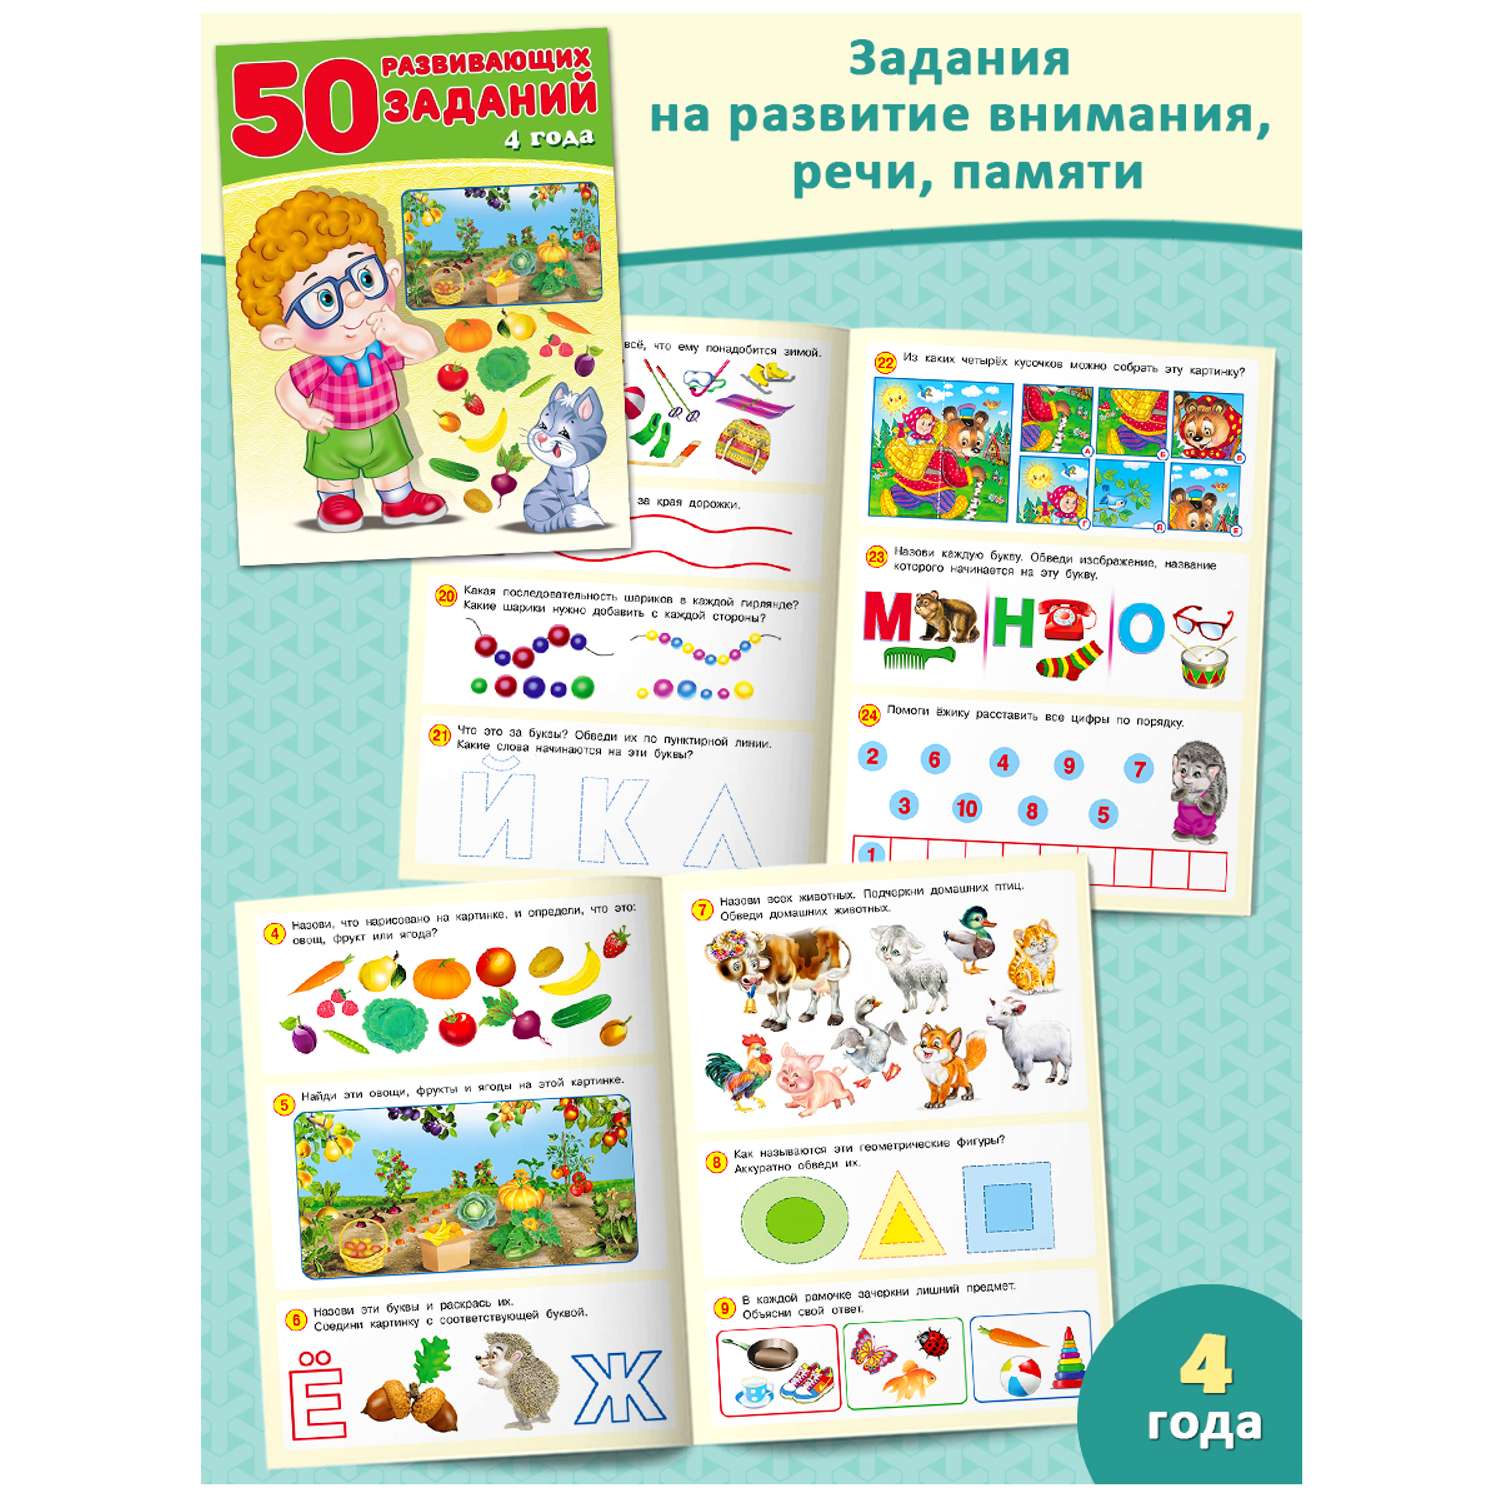 Набор из 3-х книг Фламинго Для детей развивающие Задания на развитие речи памяти внимания Подготовка к школе - фото 5